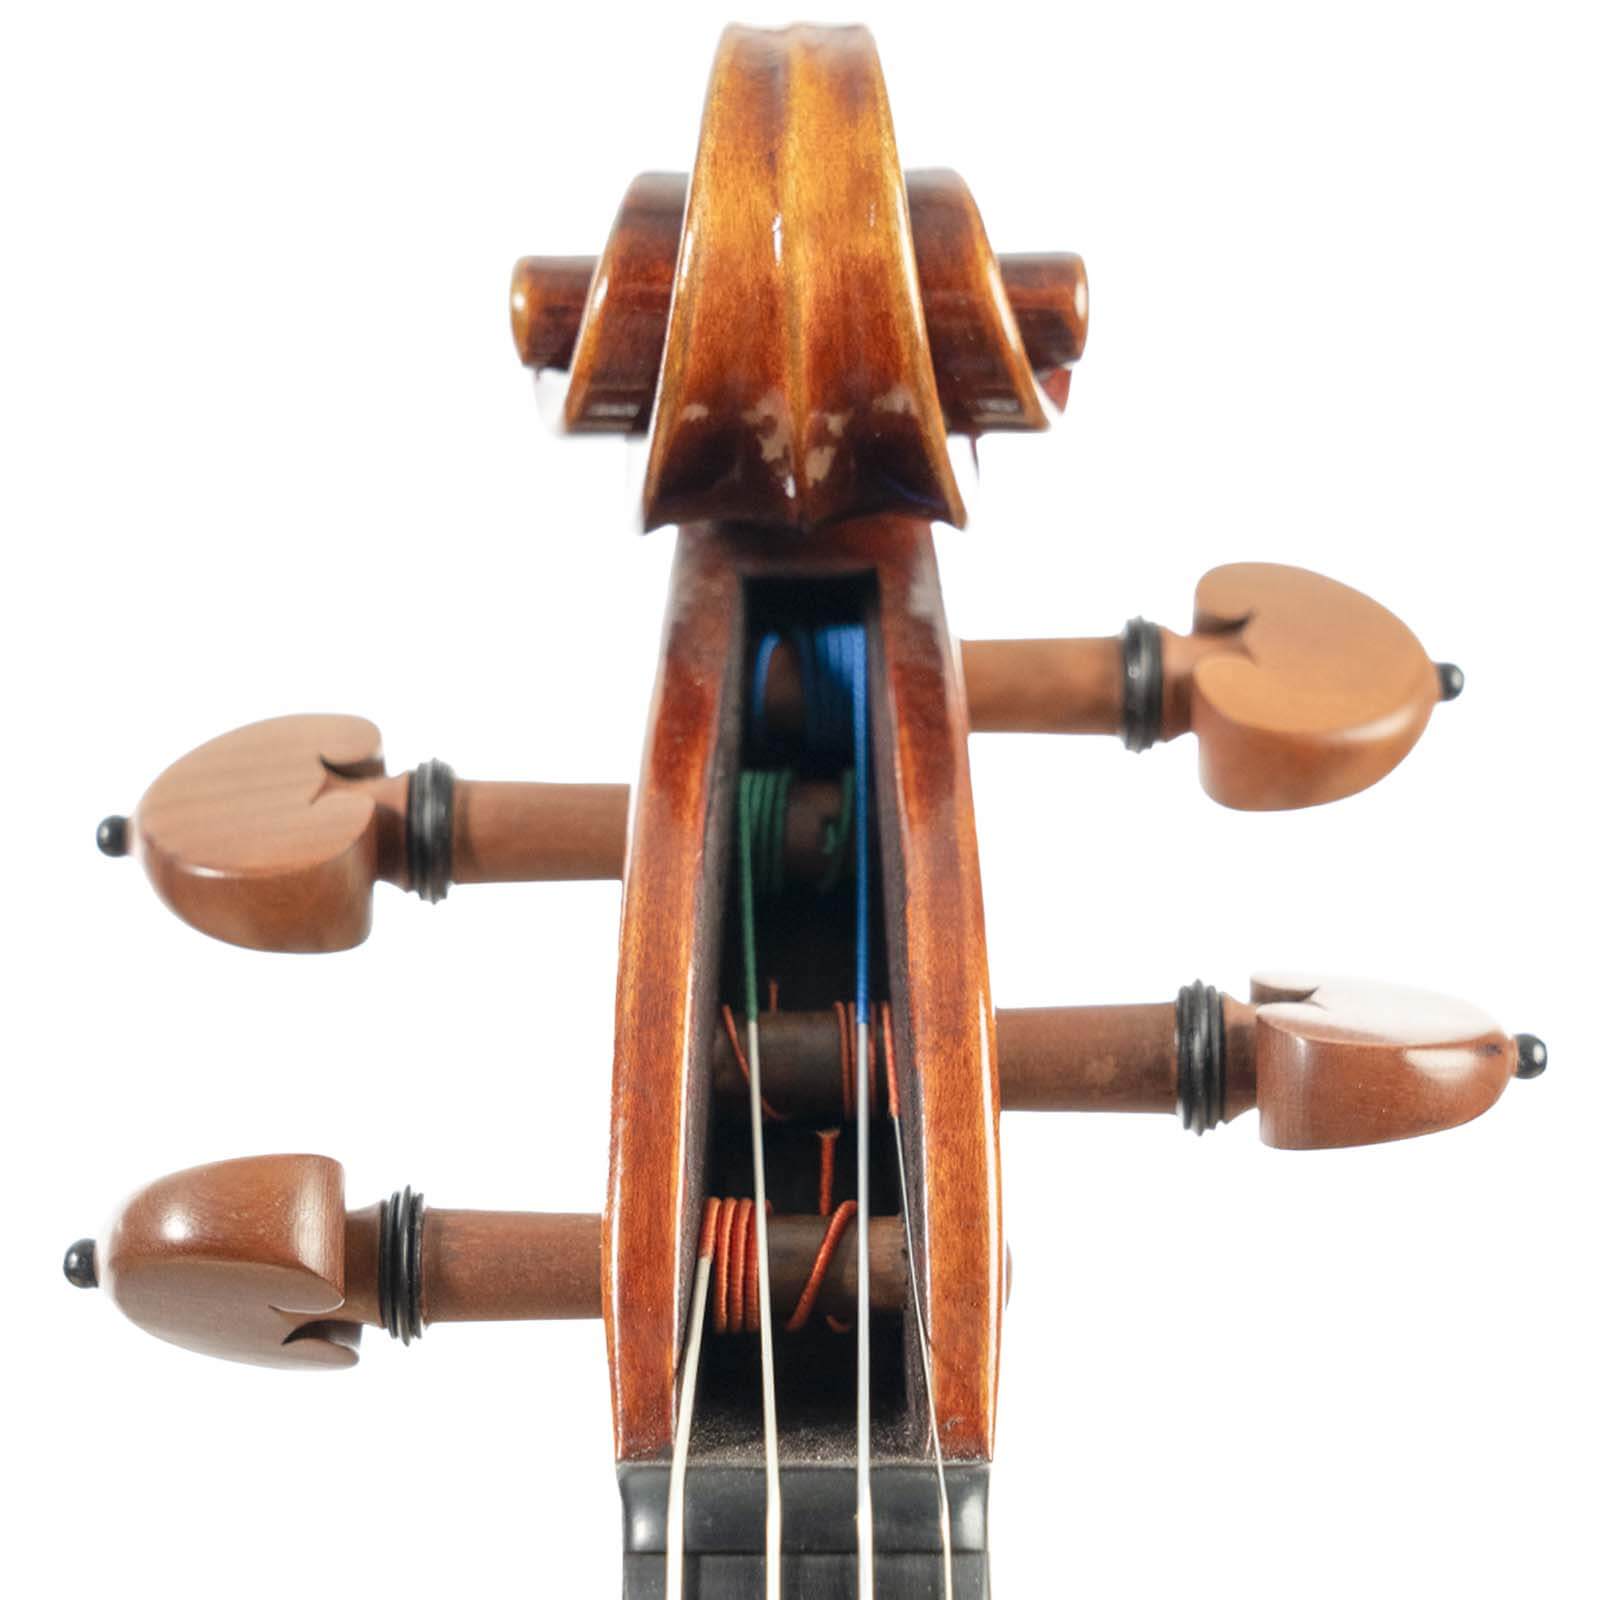 Carlo Lamberti Master Series Violin